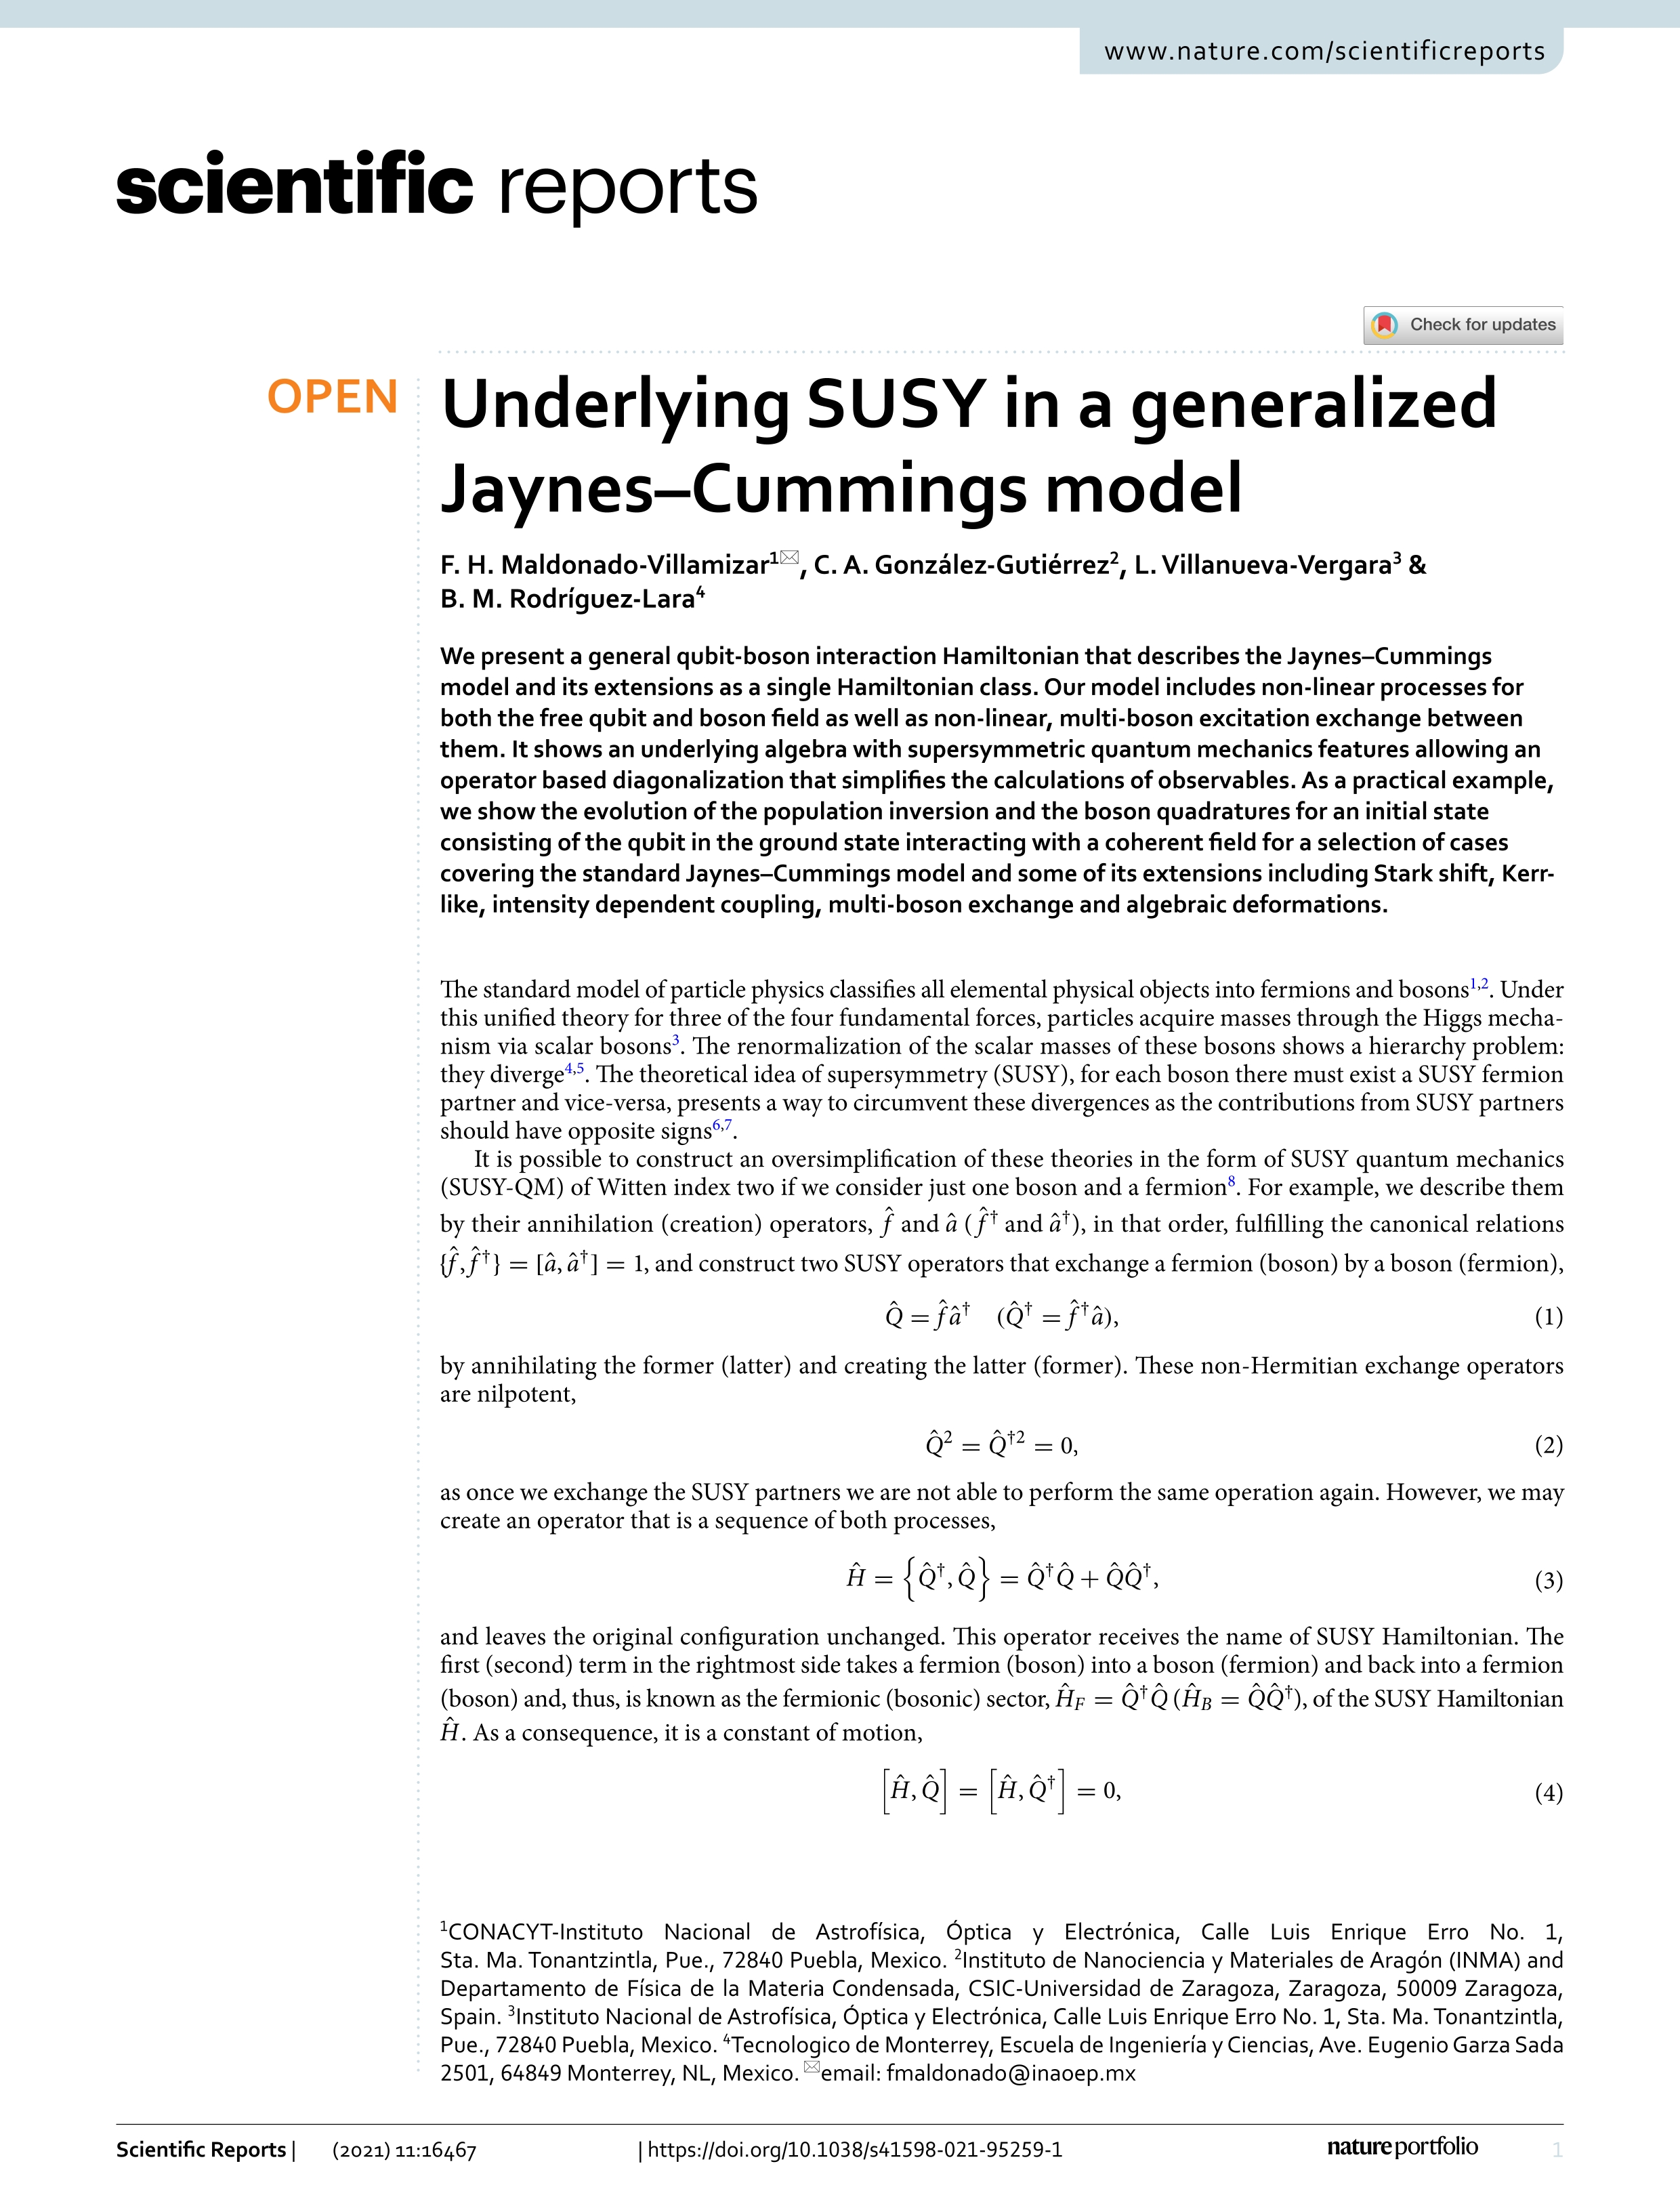 Underlying SUSY in a generalized Jaynes–Cummings model